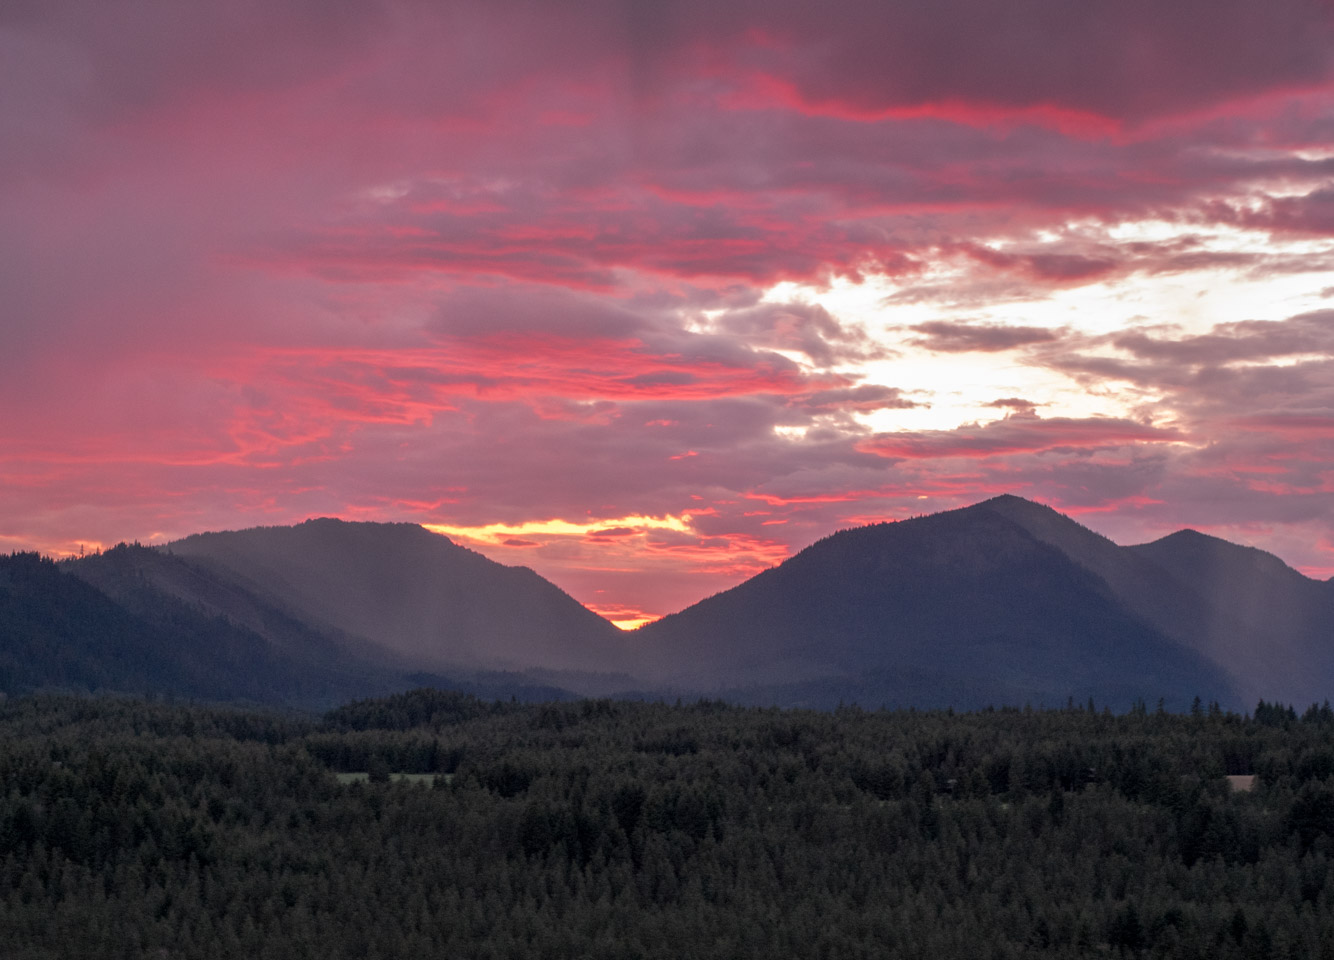 Western Washington sunset